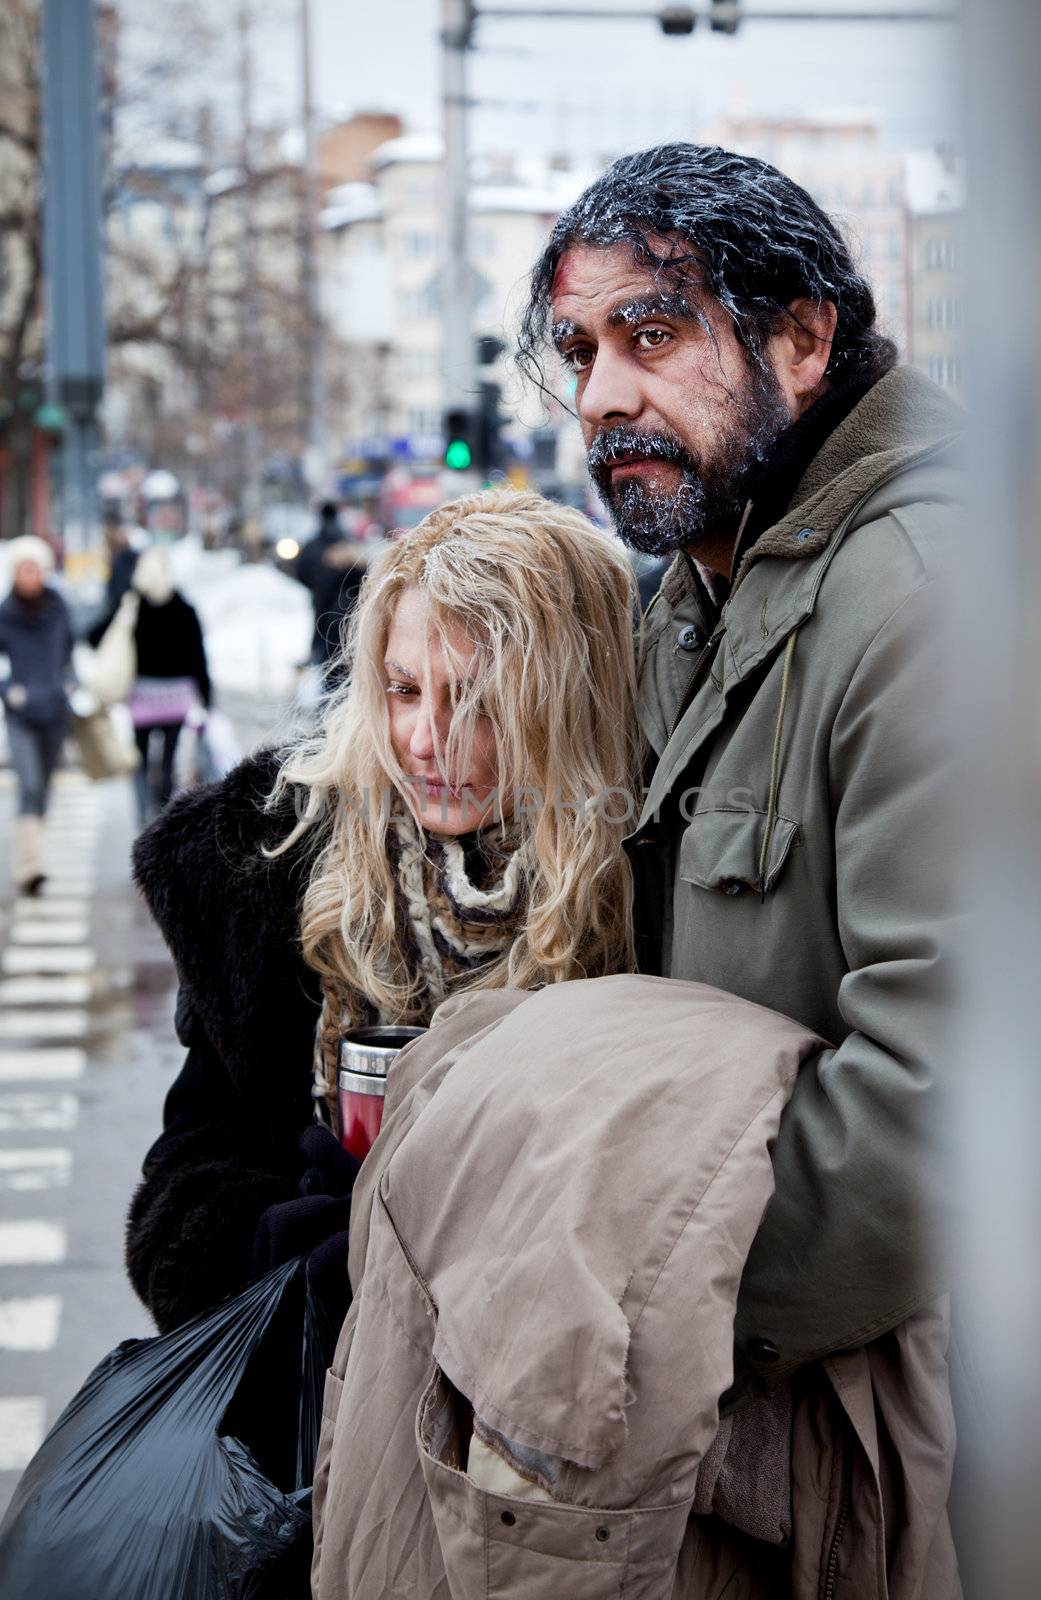 Homeless couple struggle city centre by vilevi